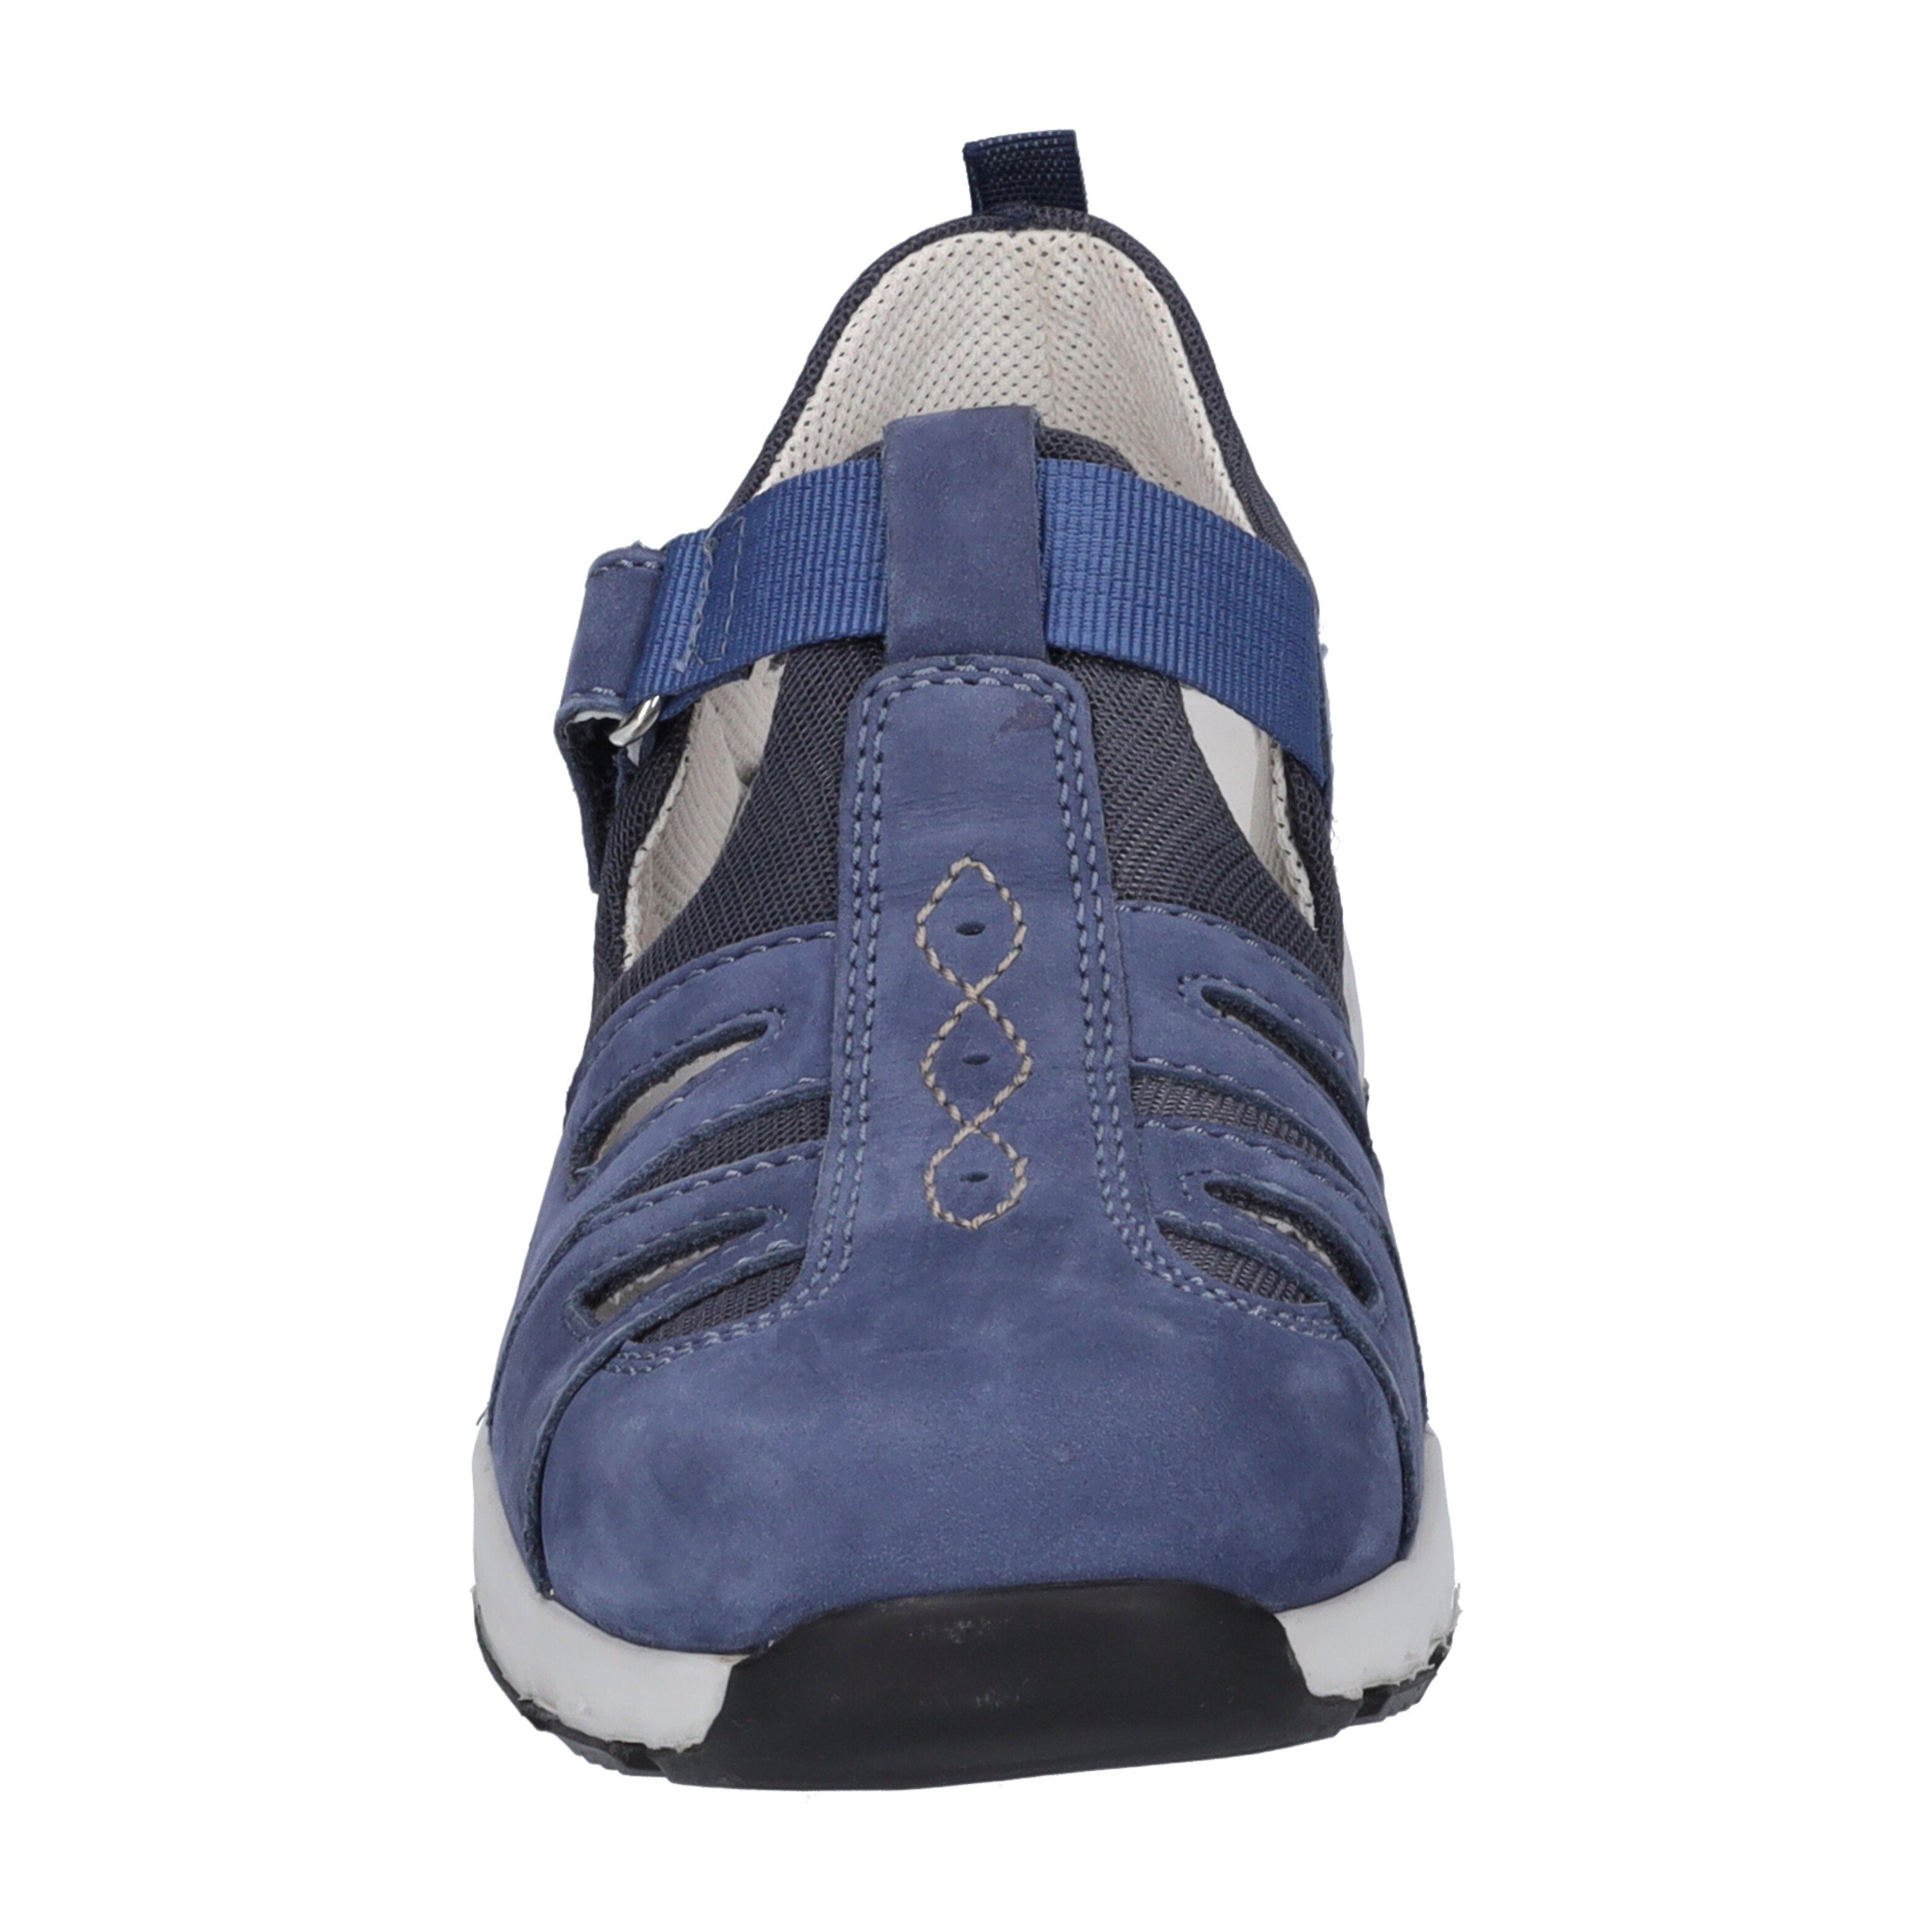 Josef Noih 07, Sneaker blau Seibel